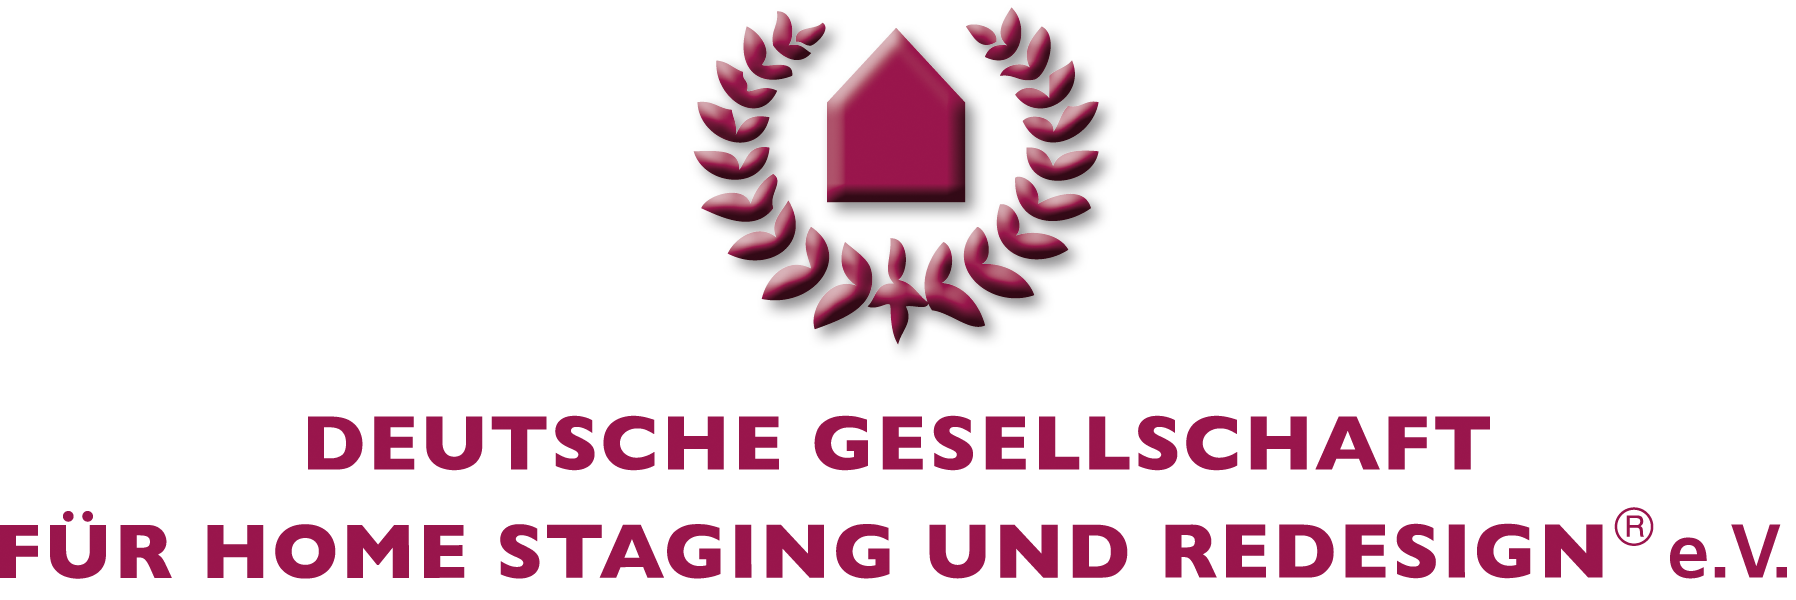 Deutsche Gesellschaft für Home Staging und Redesign e.V.